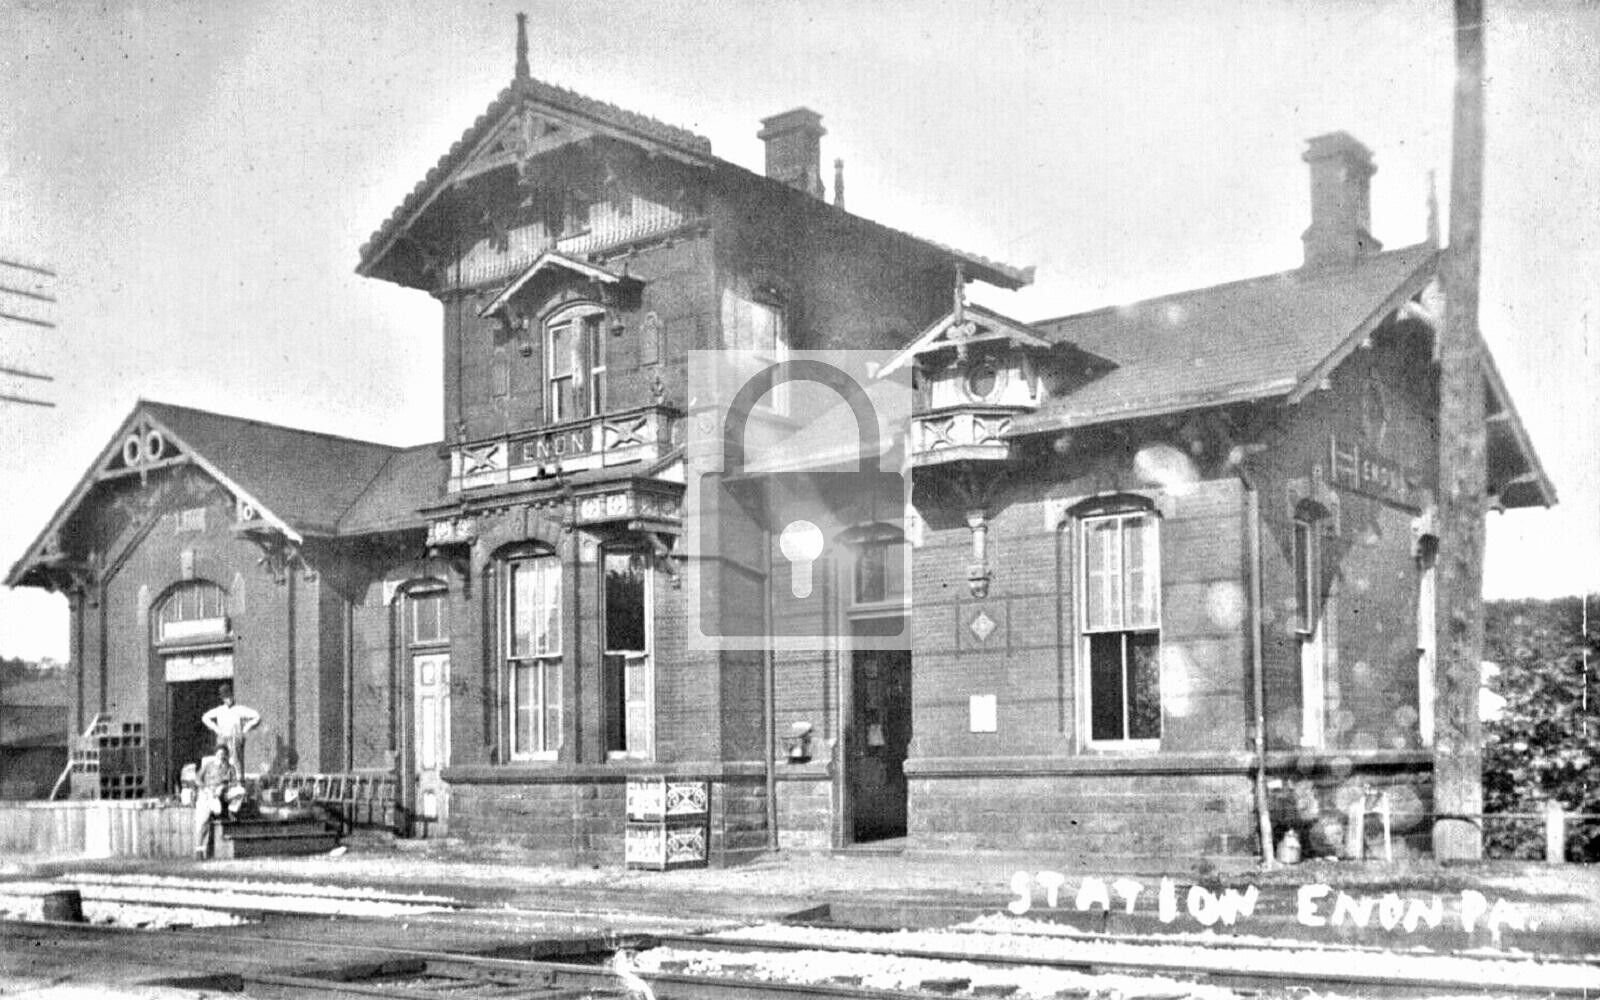 Railroad Train Station Depot Enon Pennsylvania PA Reprint Postcard